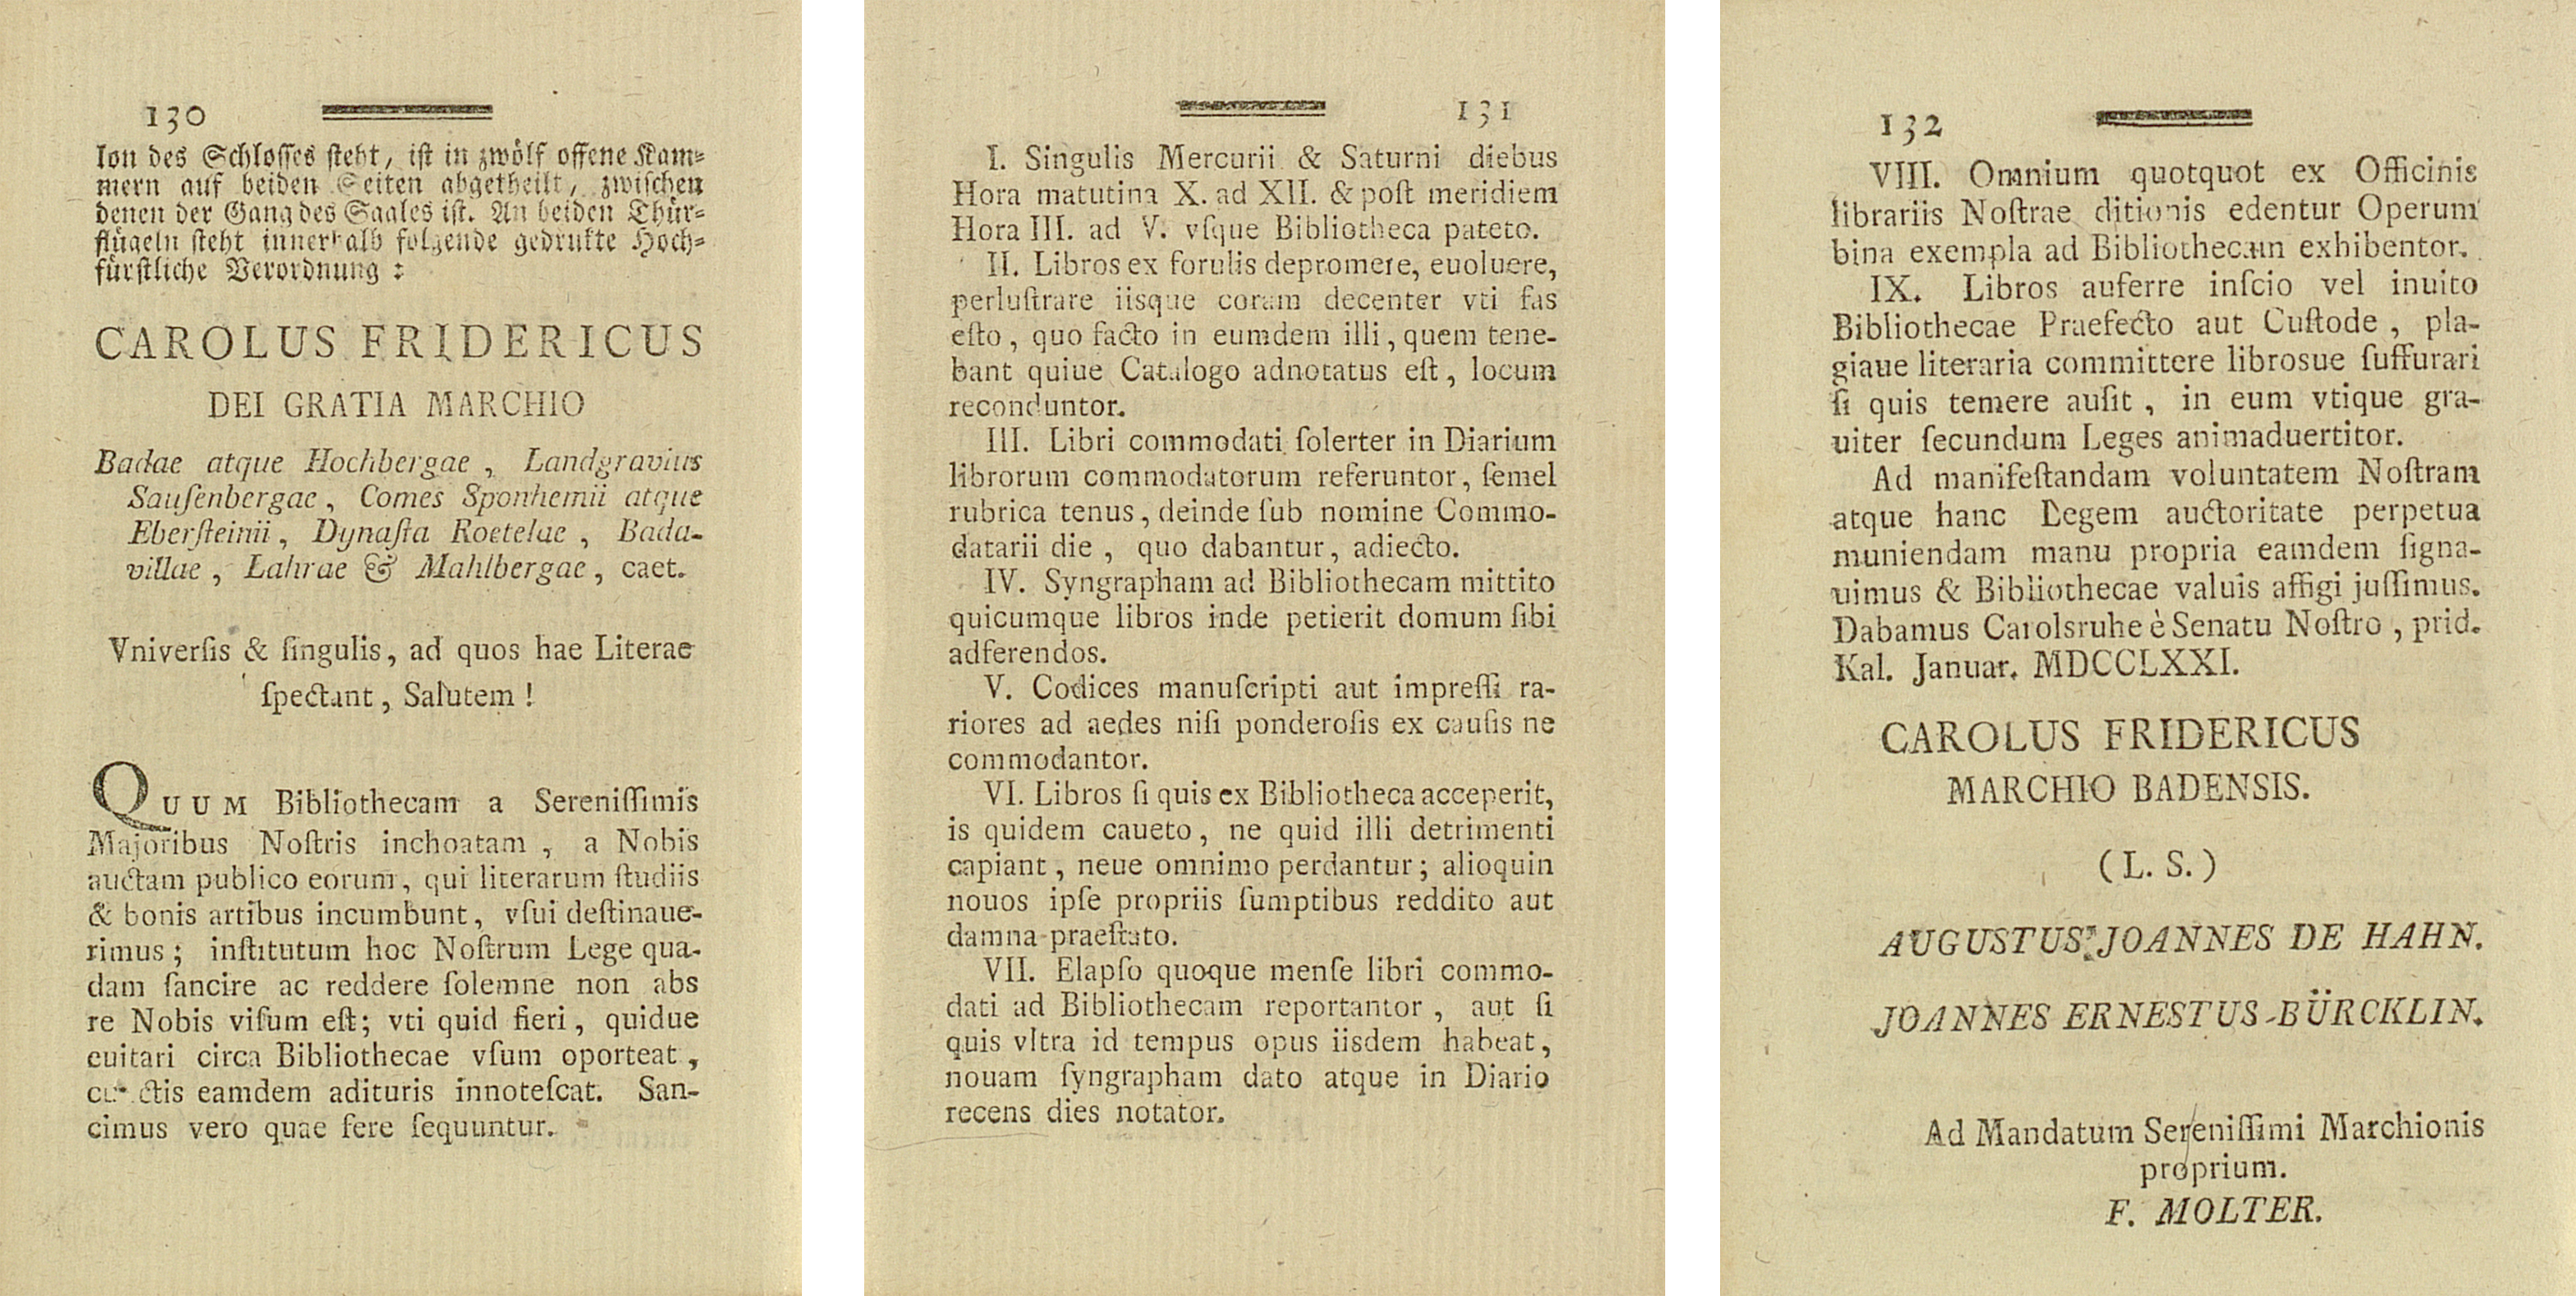 Zu sehen sind drei Textseiten mit dem lateinischen Text der Benutzungsordnung.